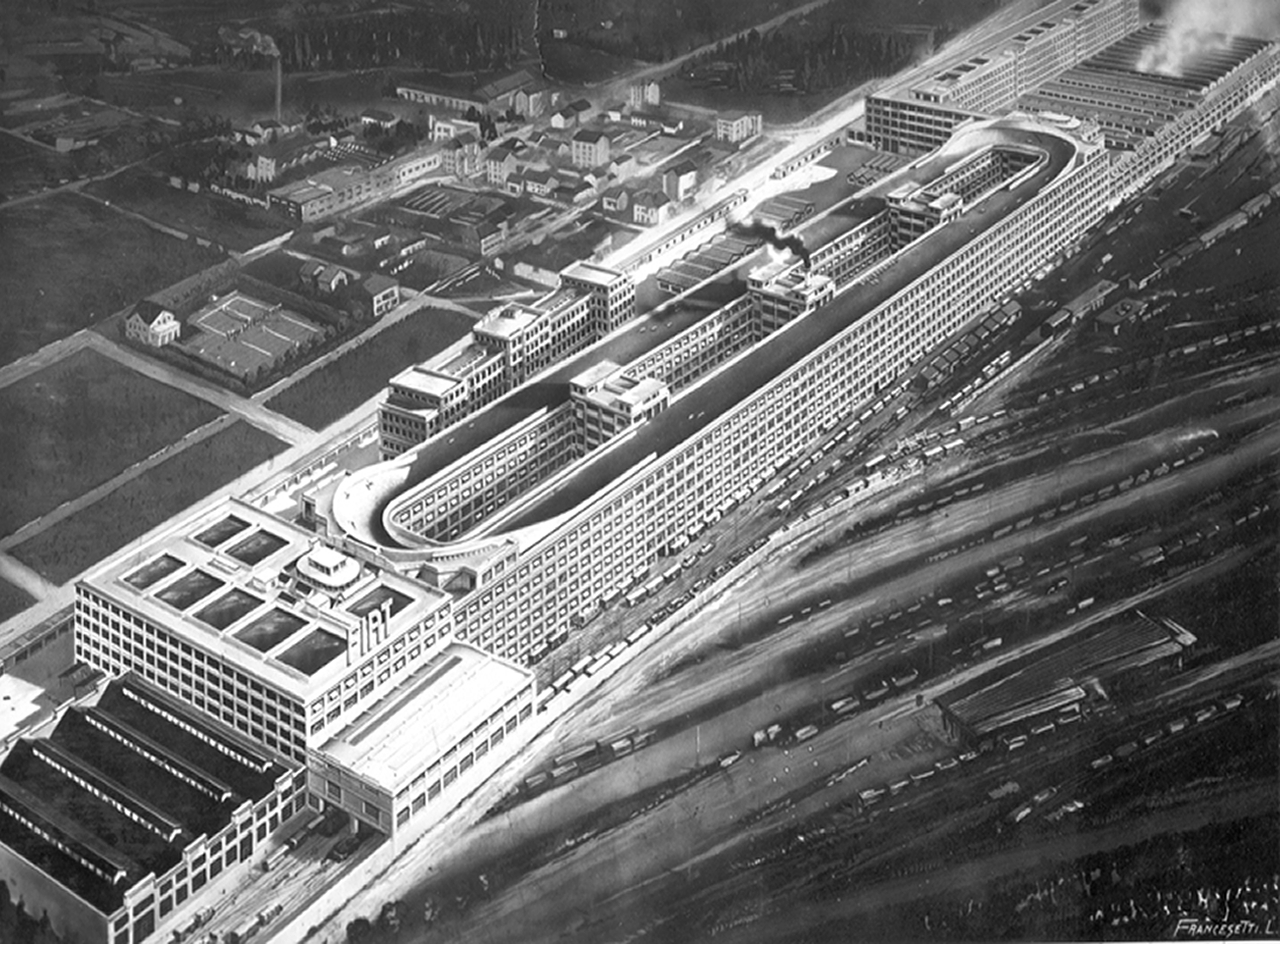 Lo stabilimento Fiat Lingotto, inaugurato nel 1923